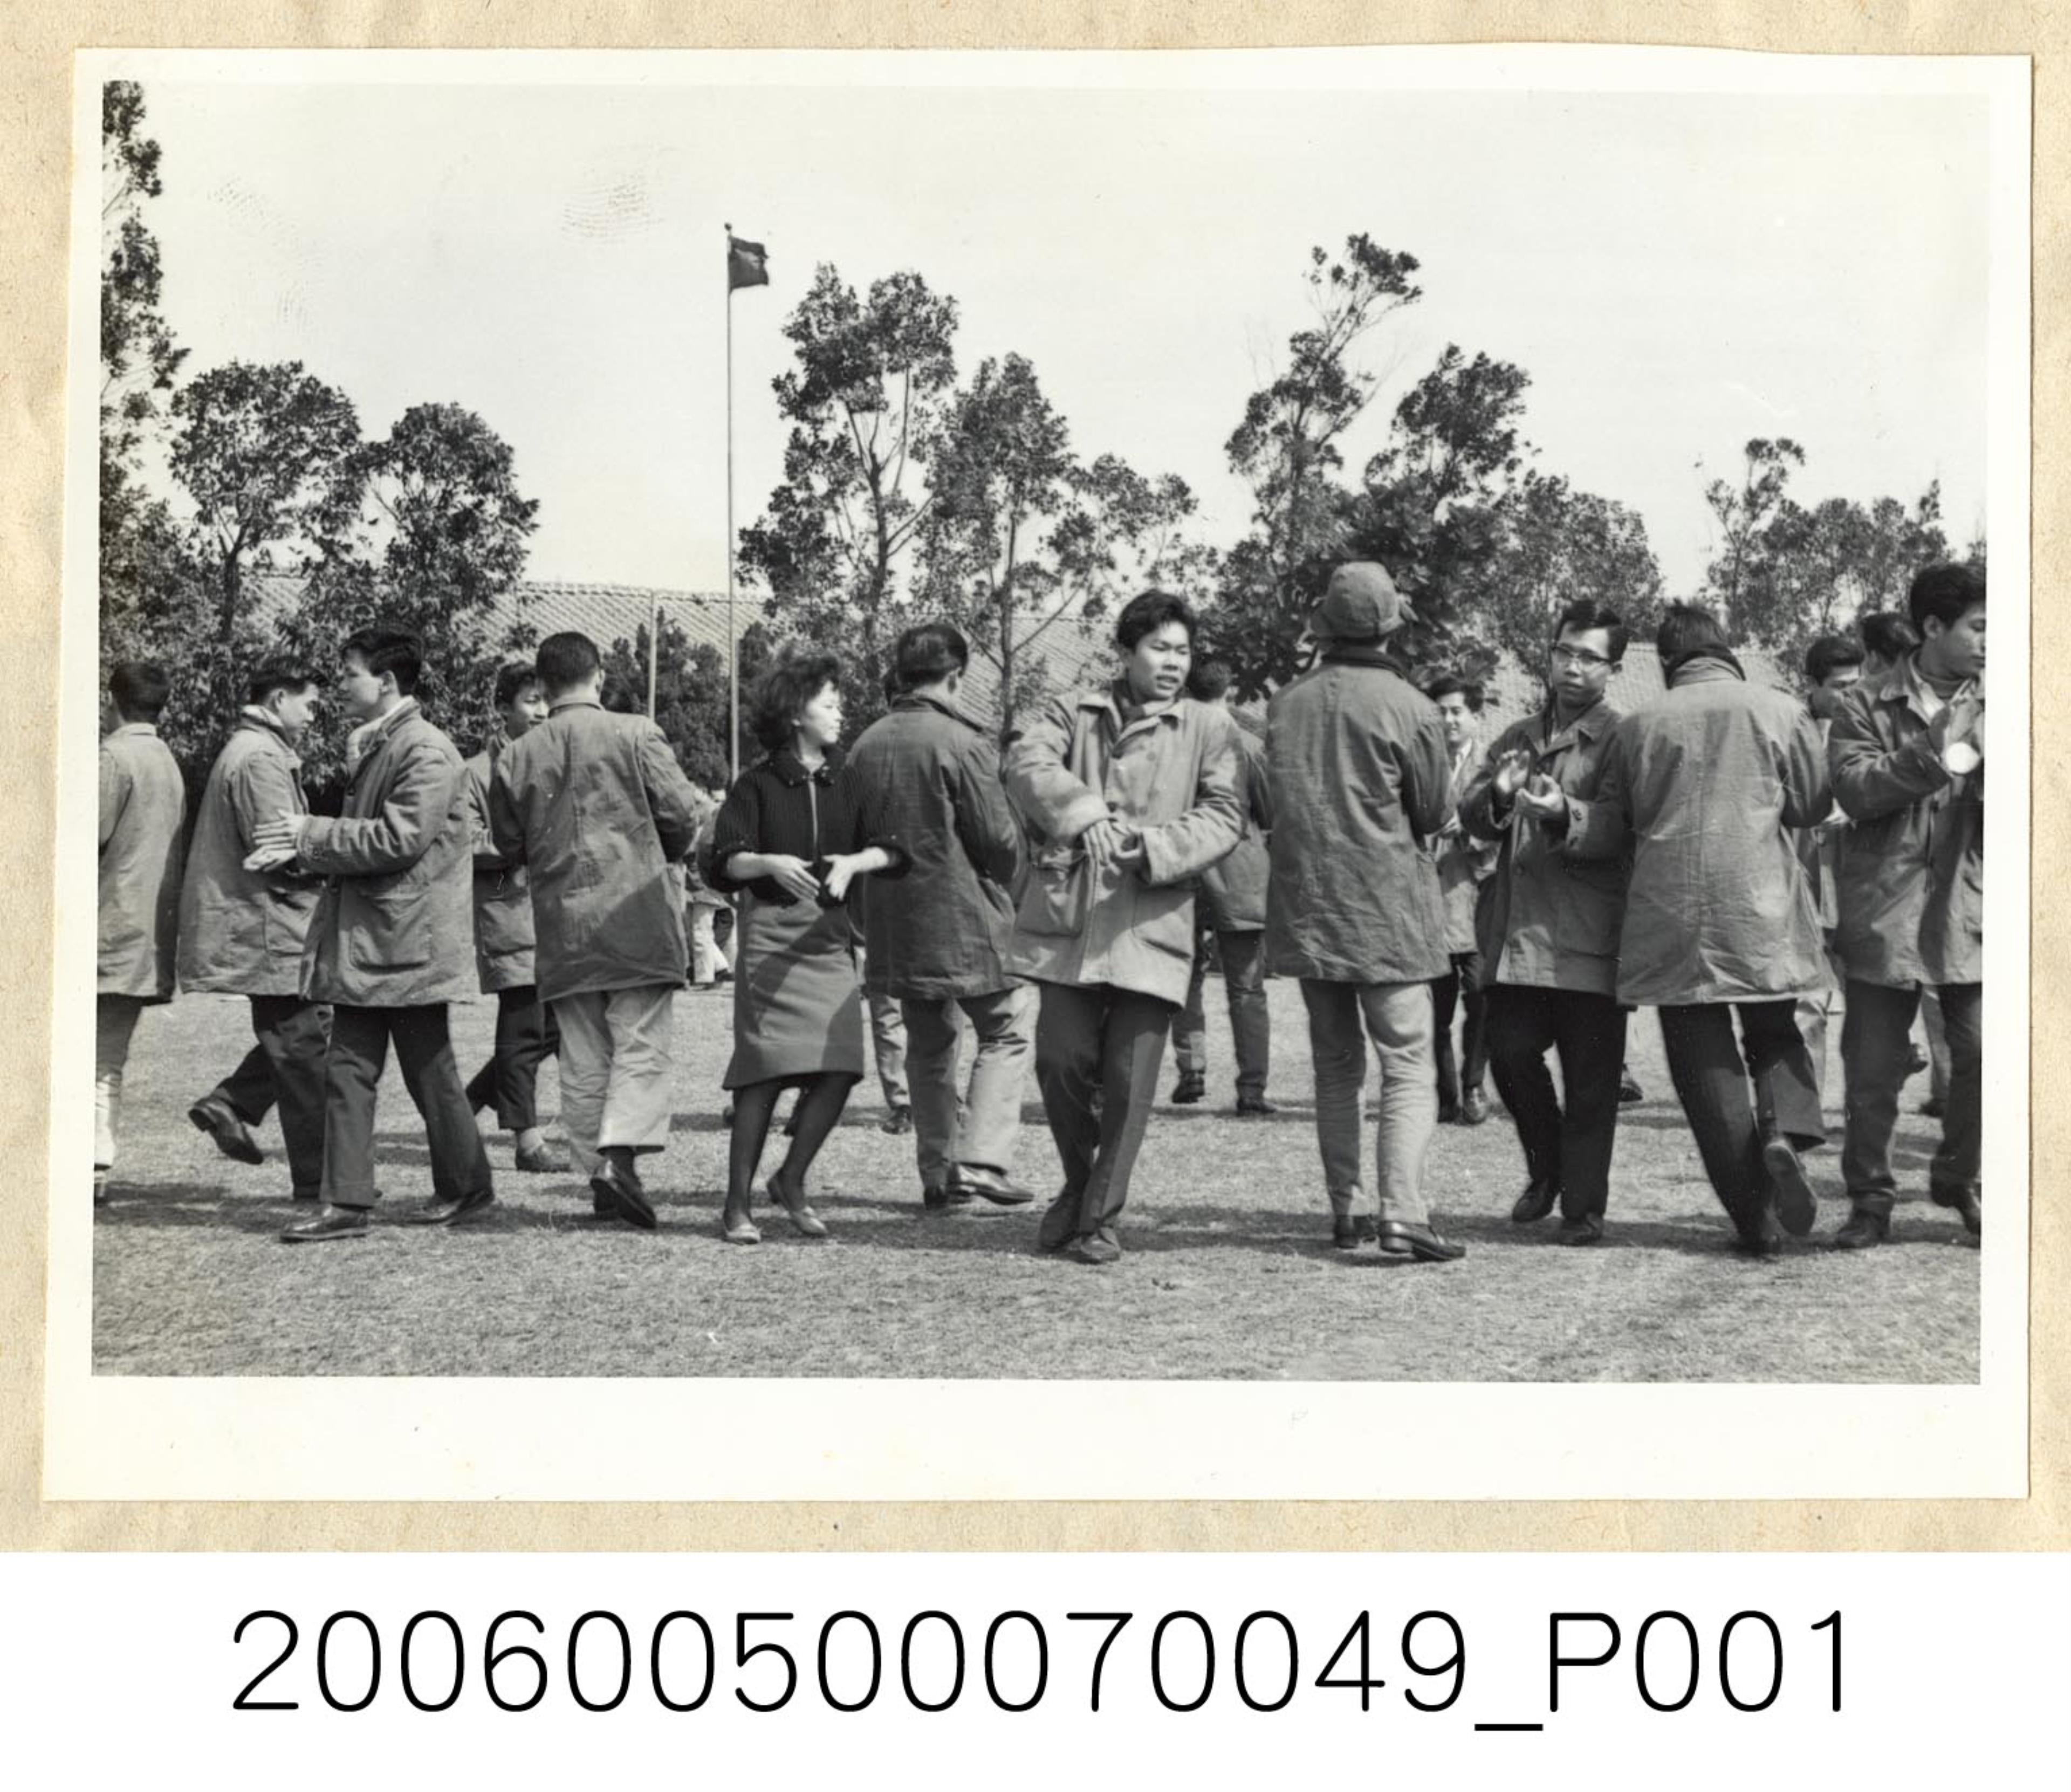 《華僑通訊社新聞照片集》〈冬令營的僑生在女教練輔導下學習舞蹈〉 (共1張)